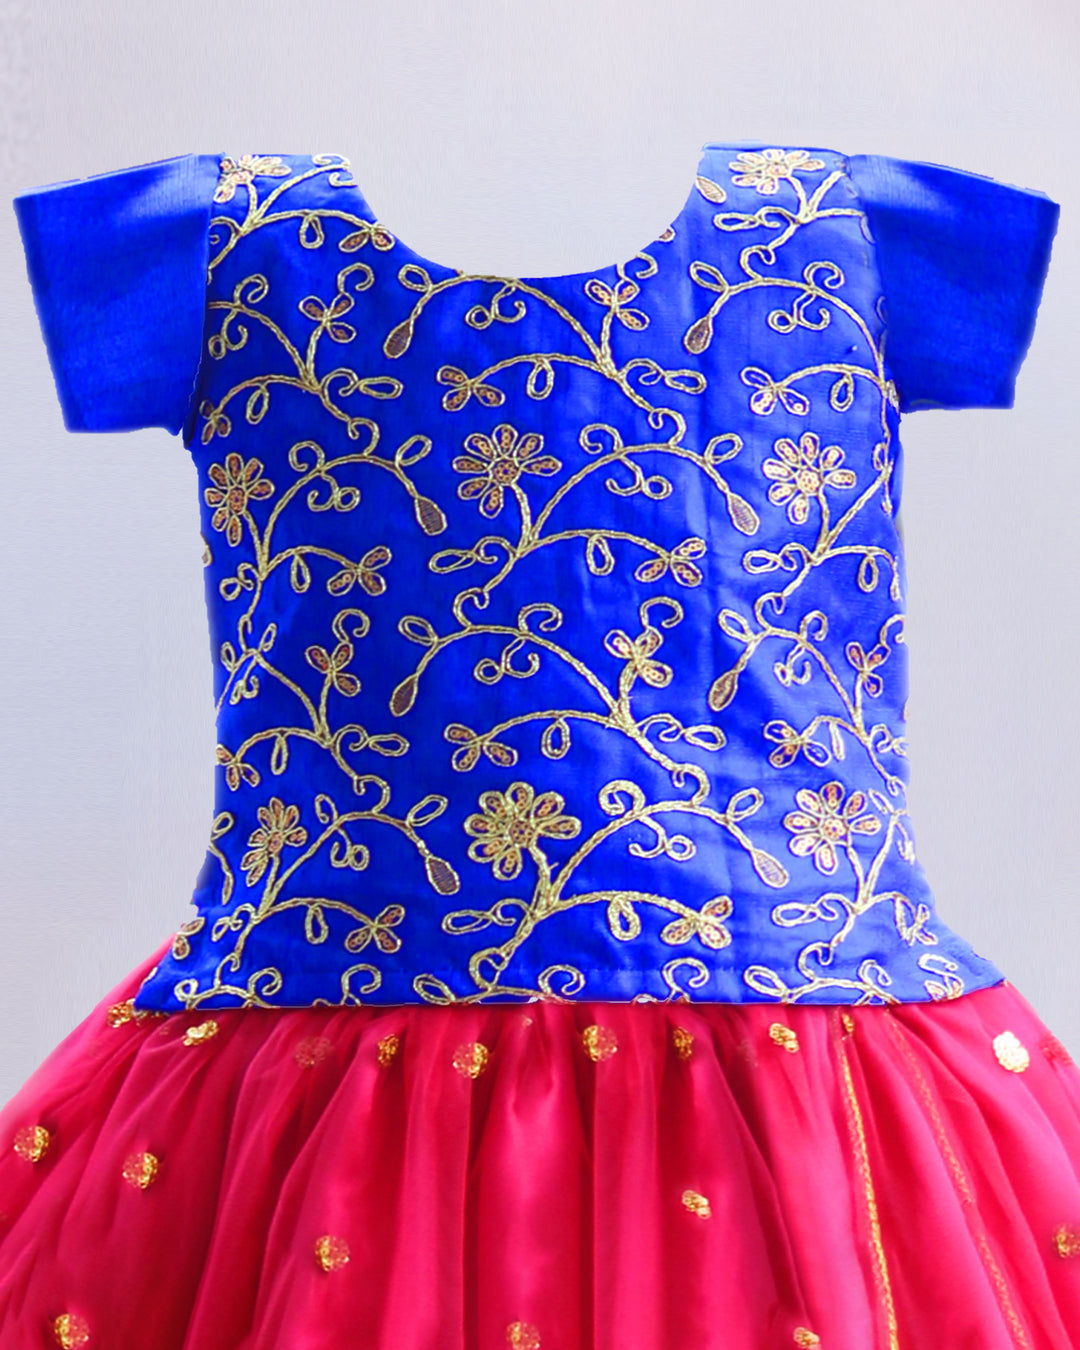 royalblue blouse for kids stanwells kids